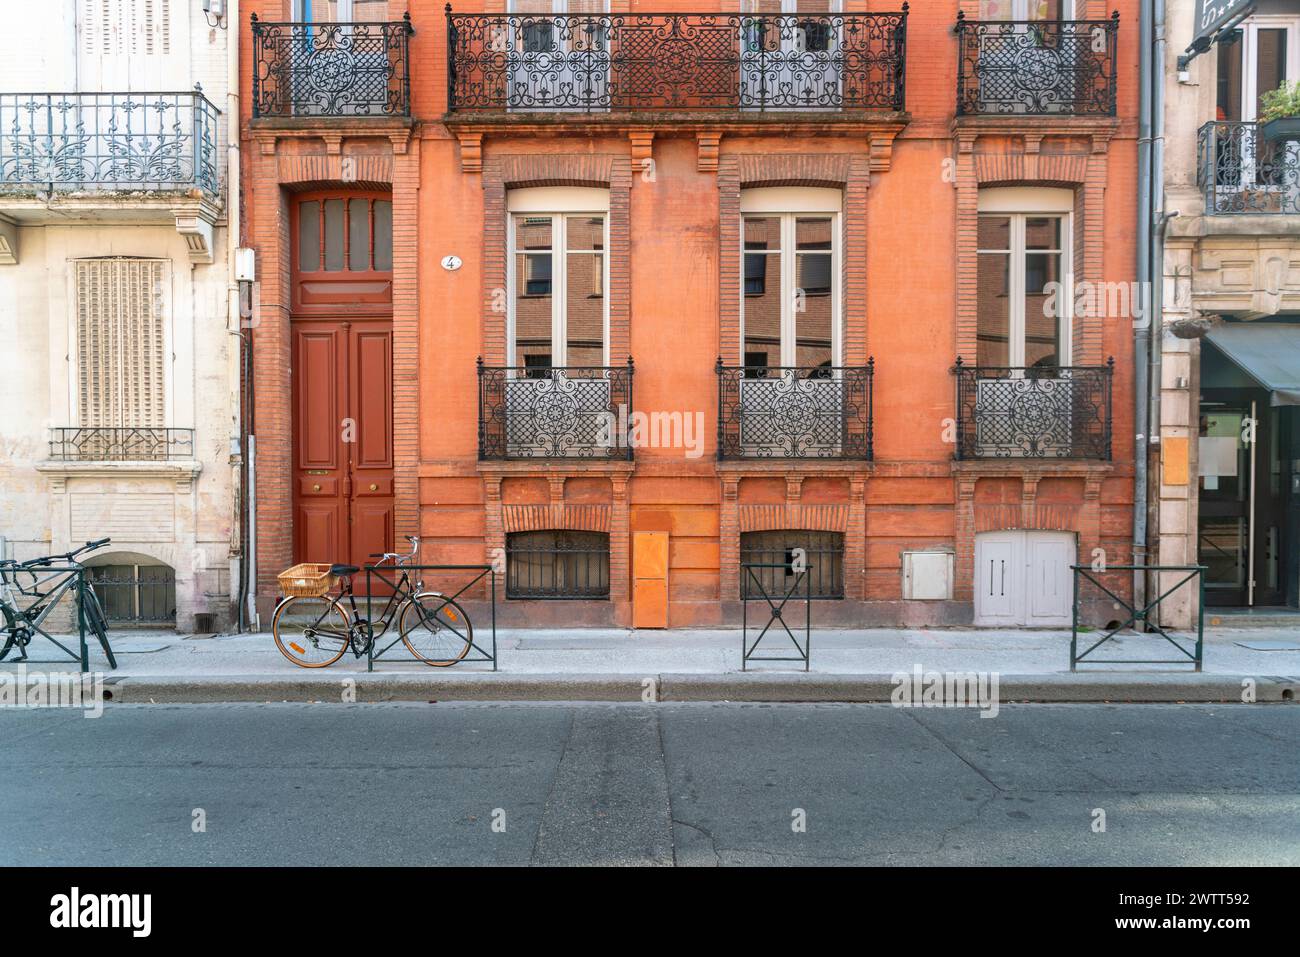 Facciata o esterno di storiche case tradizionali in rosso o arancione nella città vecchia di Tolosa, in Francia Foto Stock